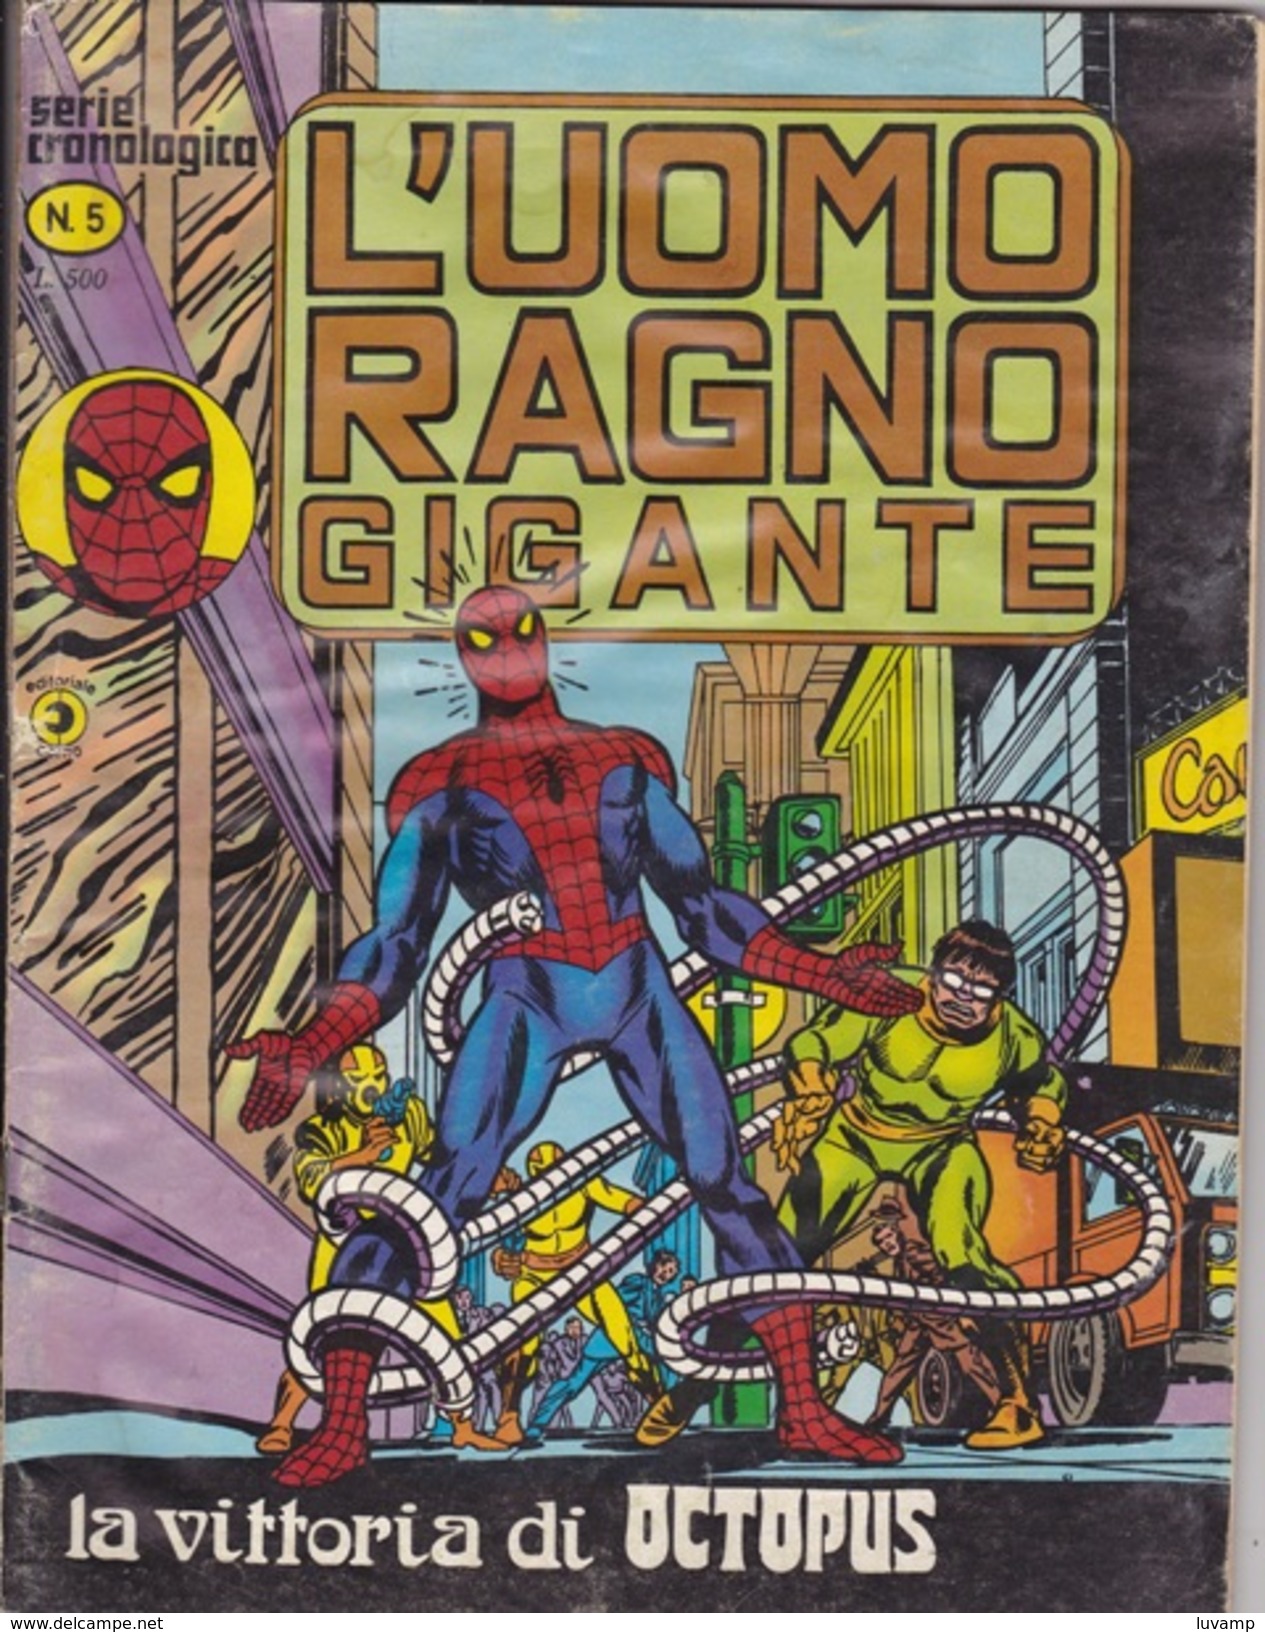 L'UOMO RAGNO GIGANTE -Serie Cronologica - Editore CORNO -N. 5 (240912) - L'uomo Ragno